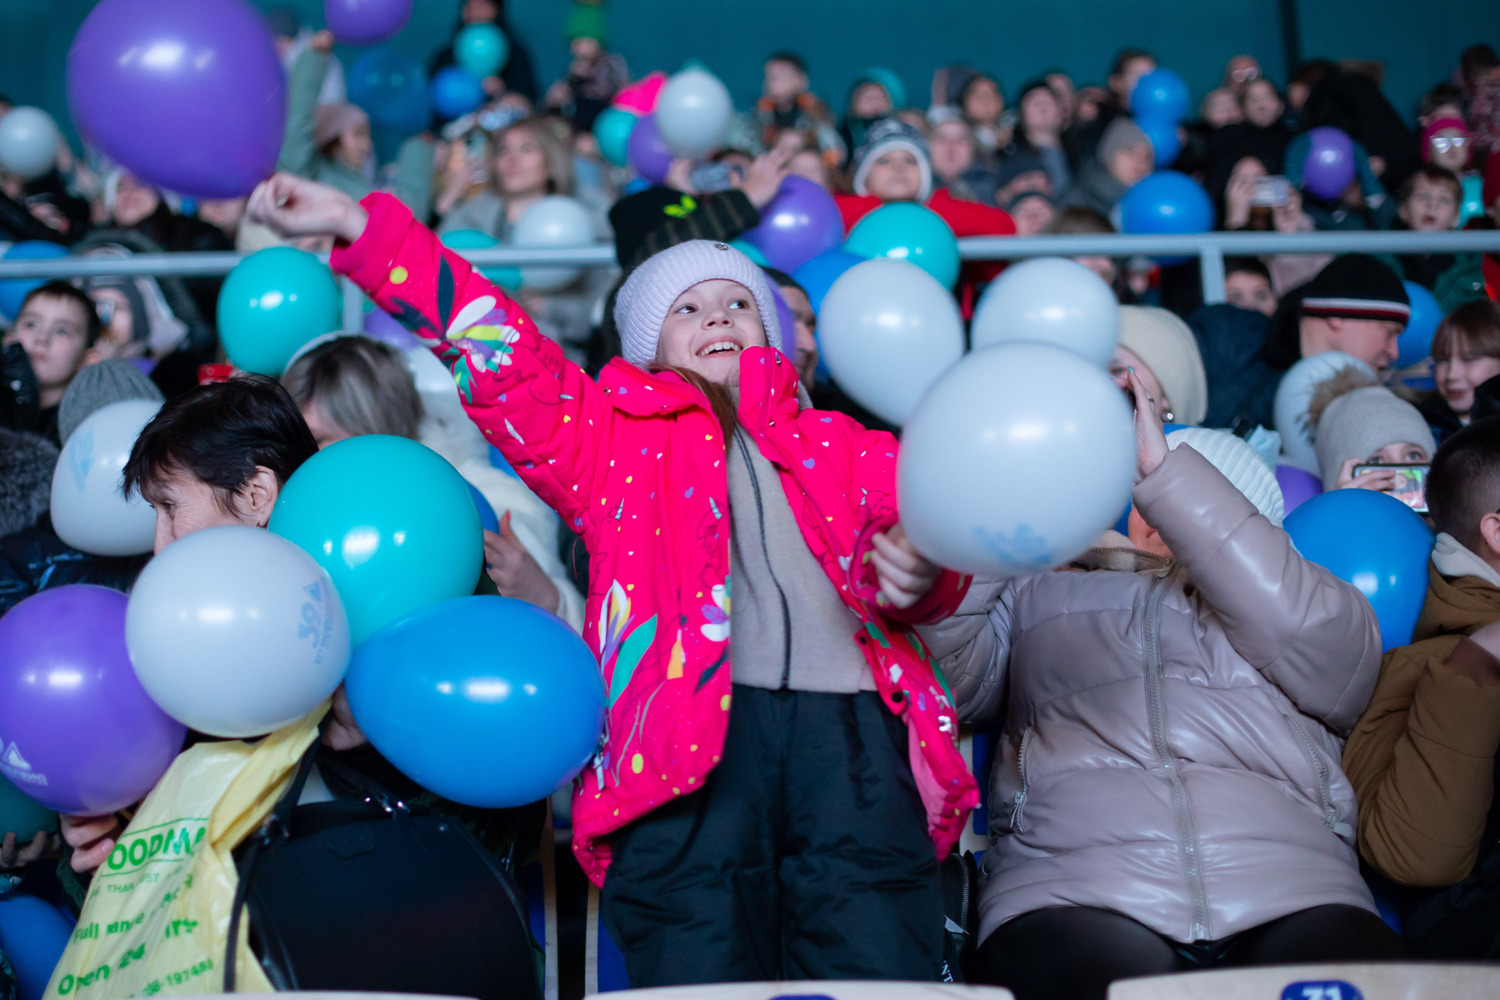 Яркое начало юбилейного года: мюзикл Чебурашка Шоу. Ушастые Елки подарил улыбки 7 тысячам детей сотрудников Стройсервиса. Стройсервис